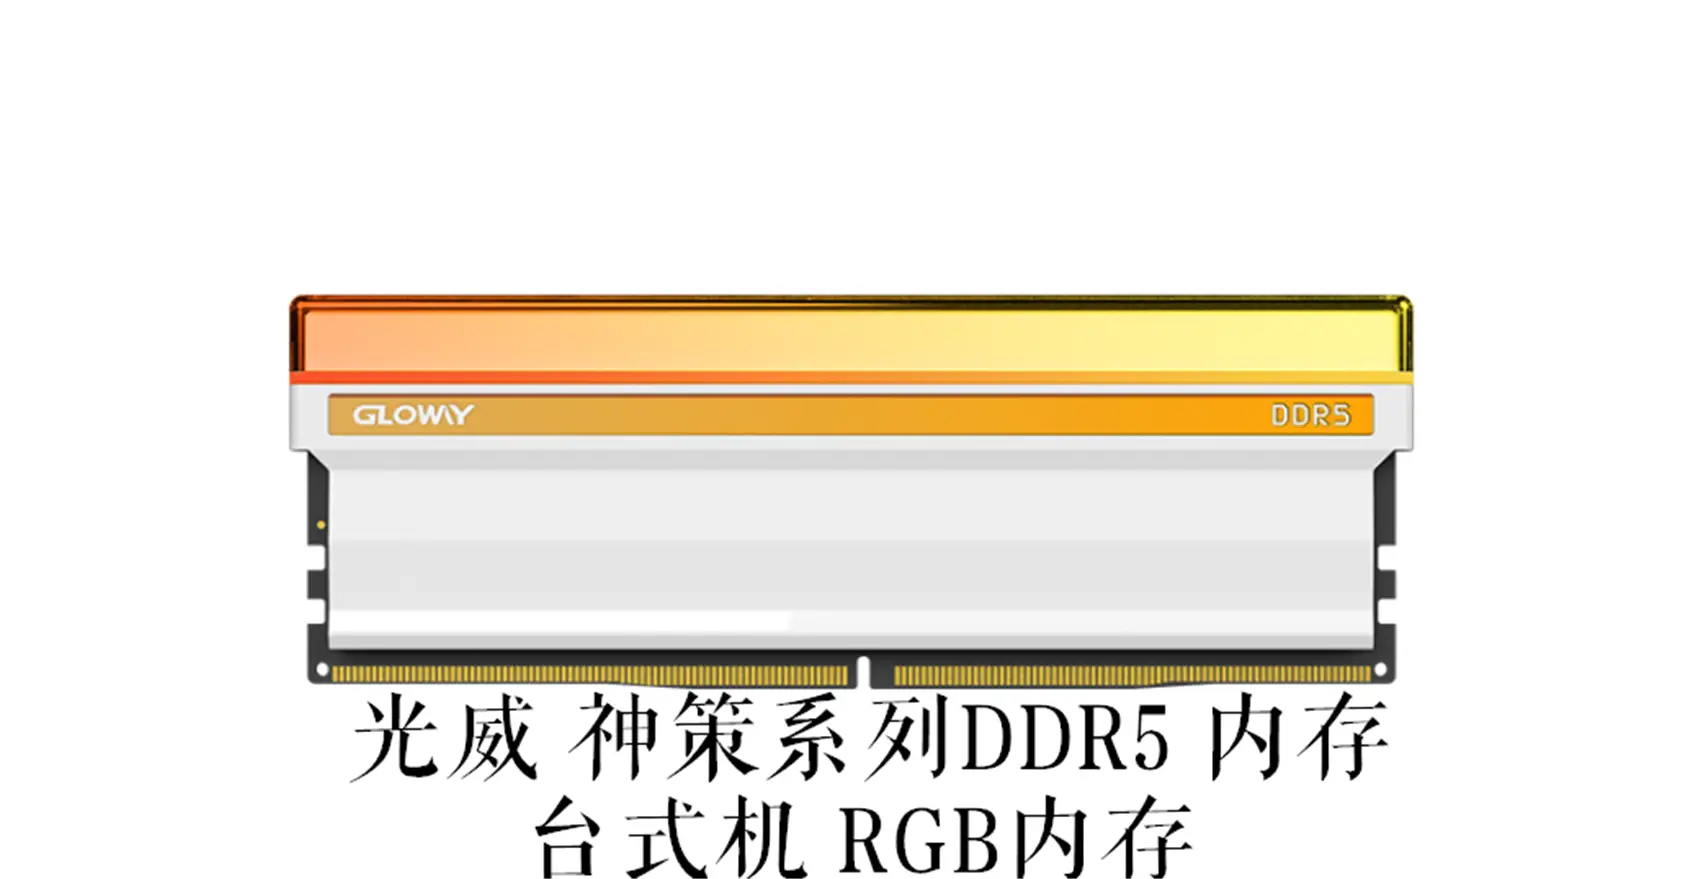 电脑硬件发烧友亲测 DDR5 内存：科技进步带来的性能跃升  第6张